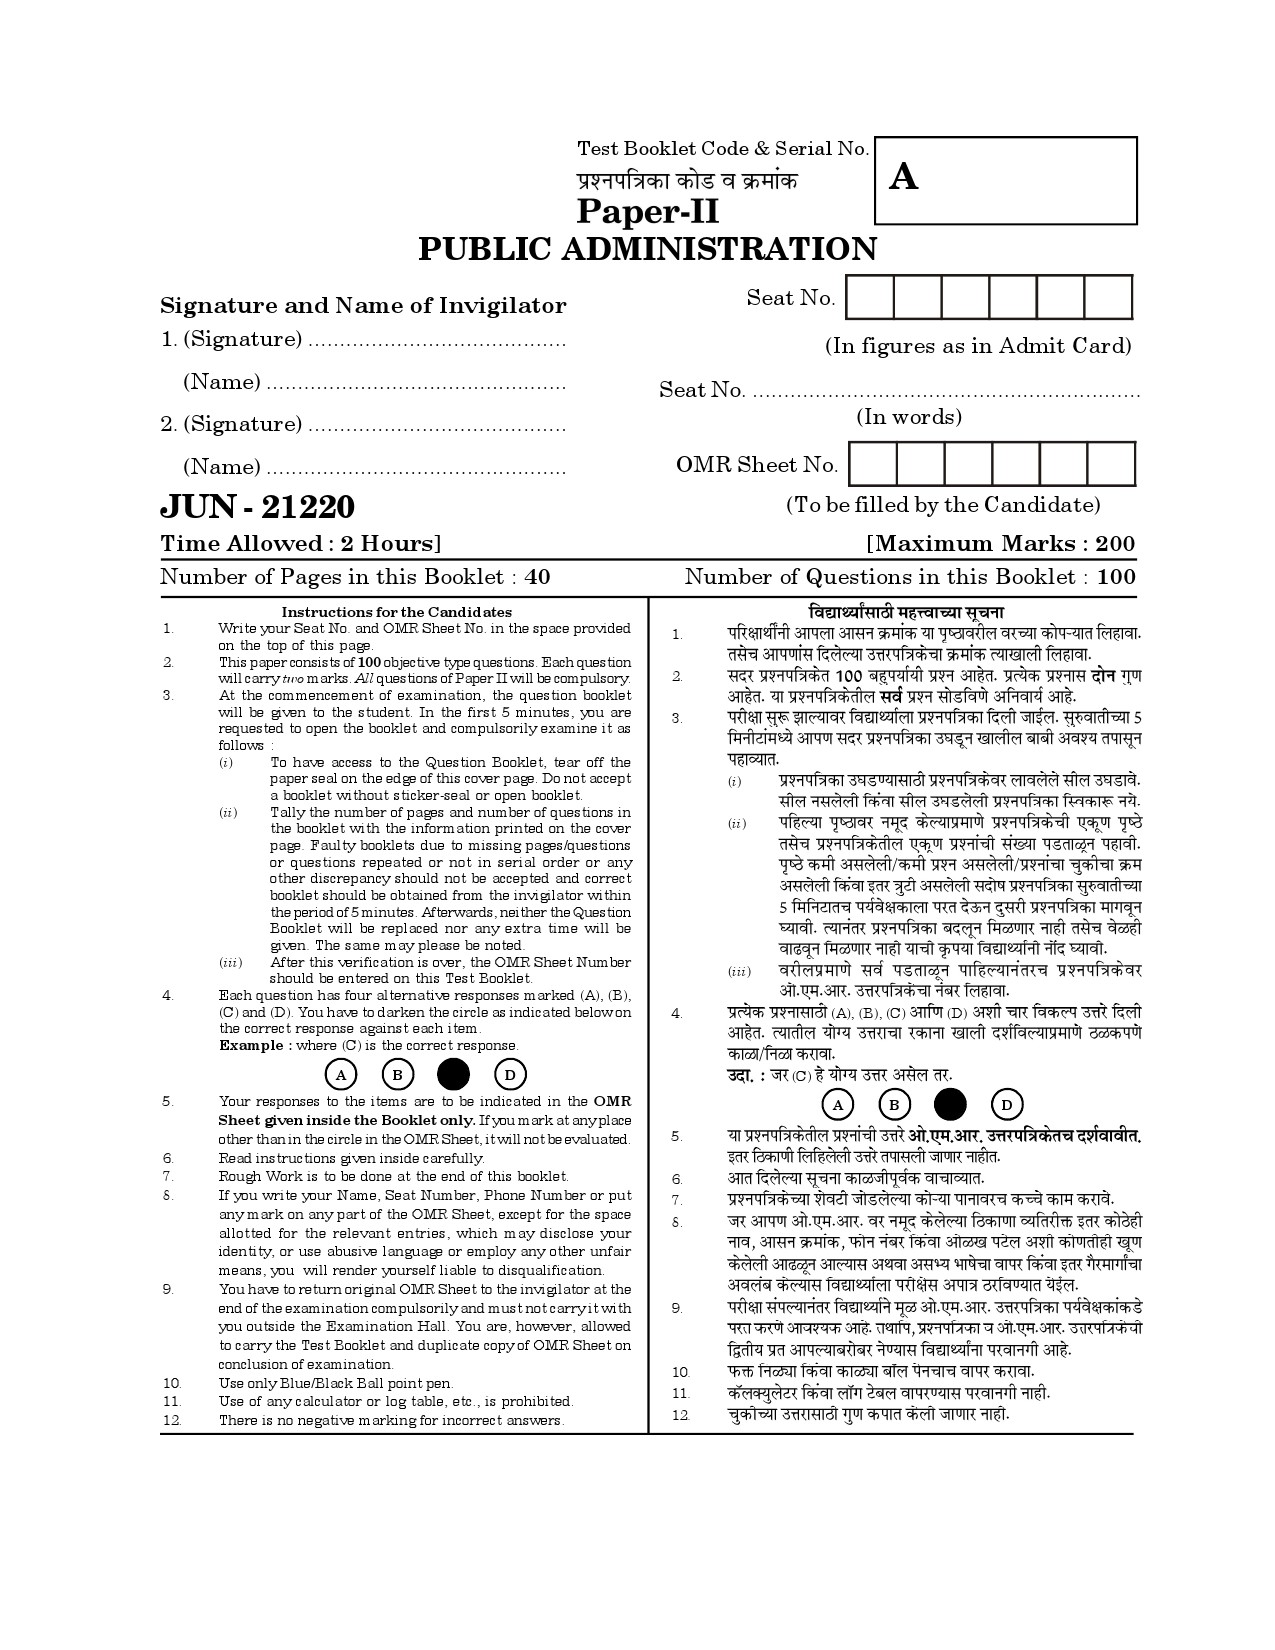 Maharashtra SET Public Administration Question Paper II June 2020 1